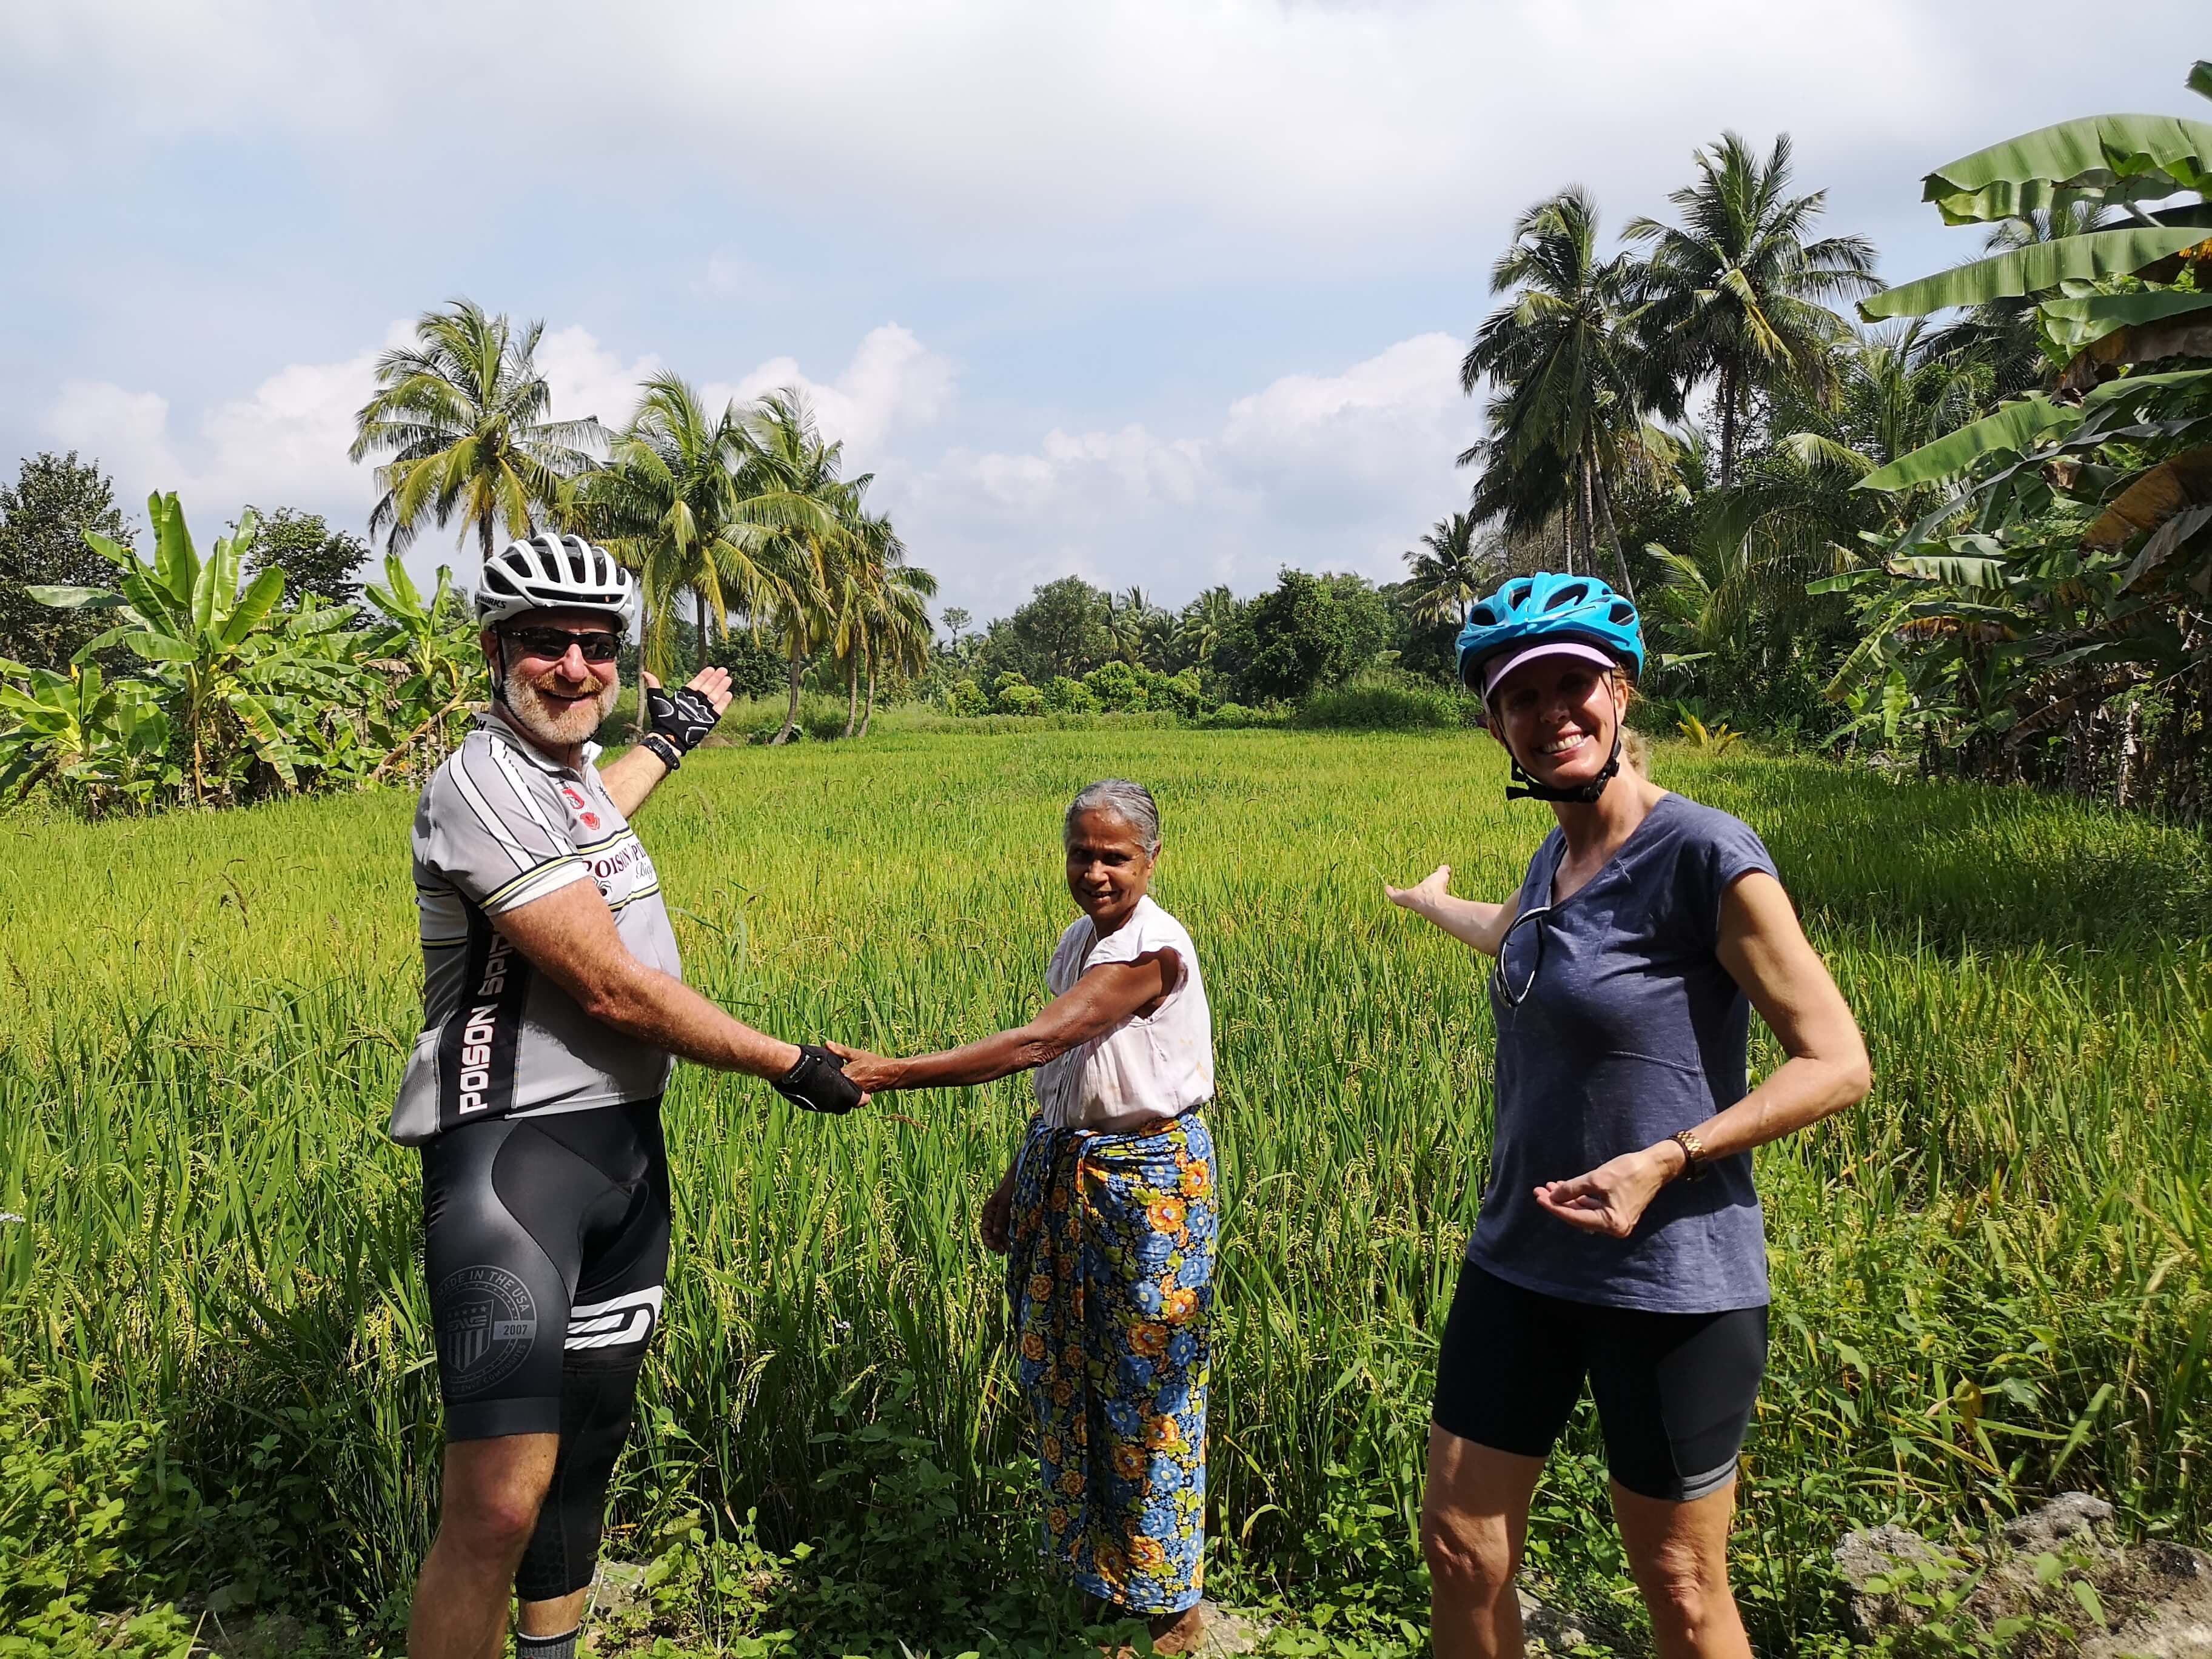 صورة لراكبي الدراجات وهم يشاهدون حقل أرز في الريف ويلتقون بأشخاص ودودين محليين في سريلانكا